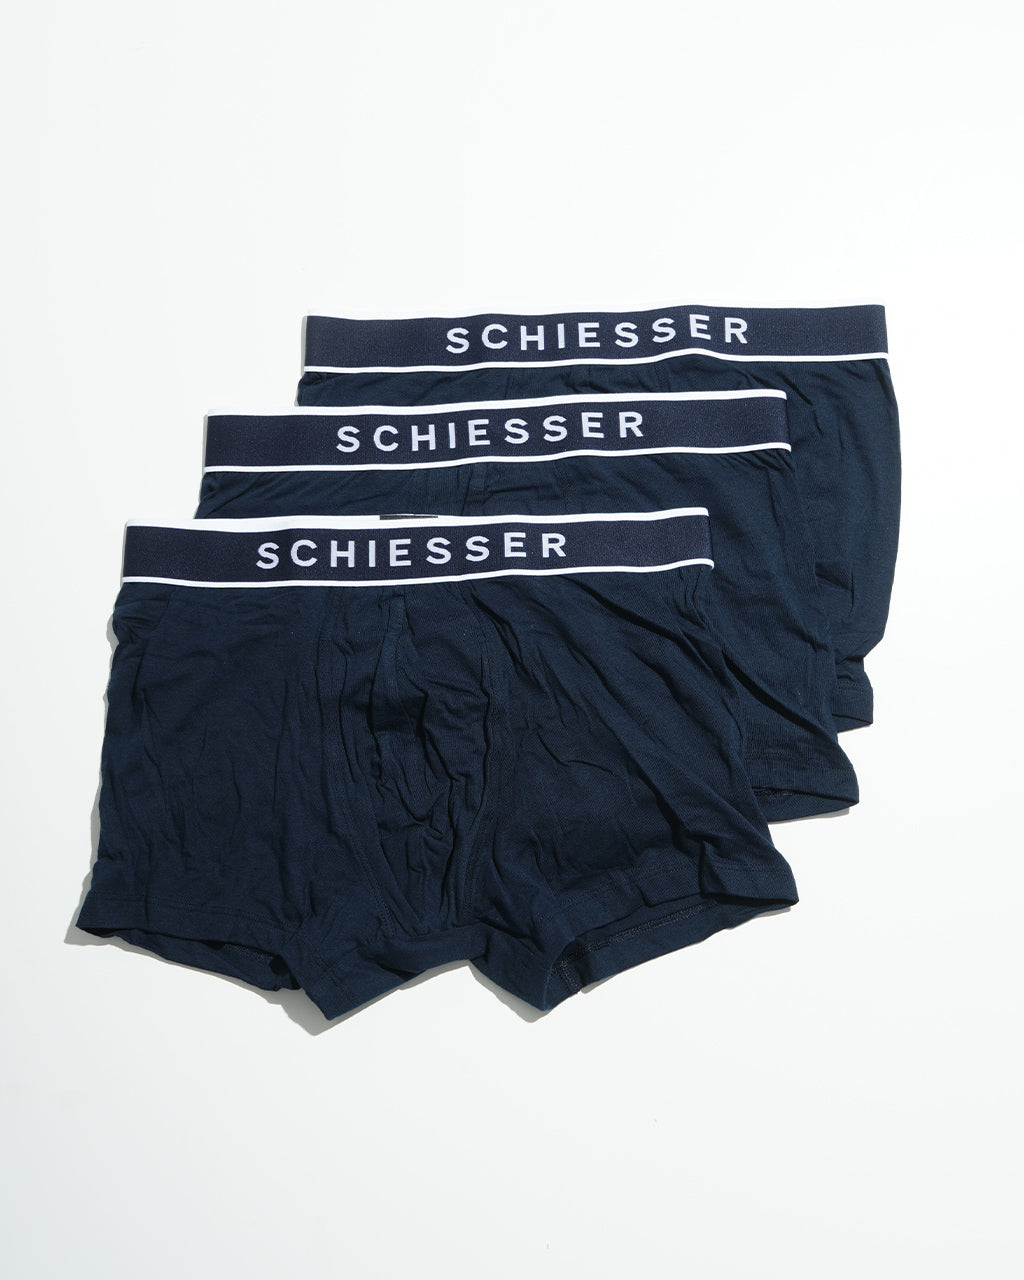 Schiesser シーサー 95/5 3パック ショーツ 3pacs shorts ボクサー ブリーフ パンツ アンダーウェア 下着  173983【送料無料】